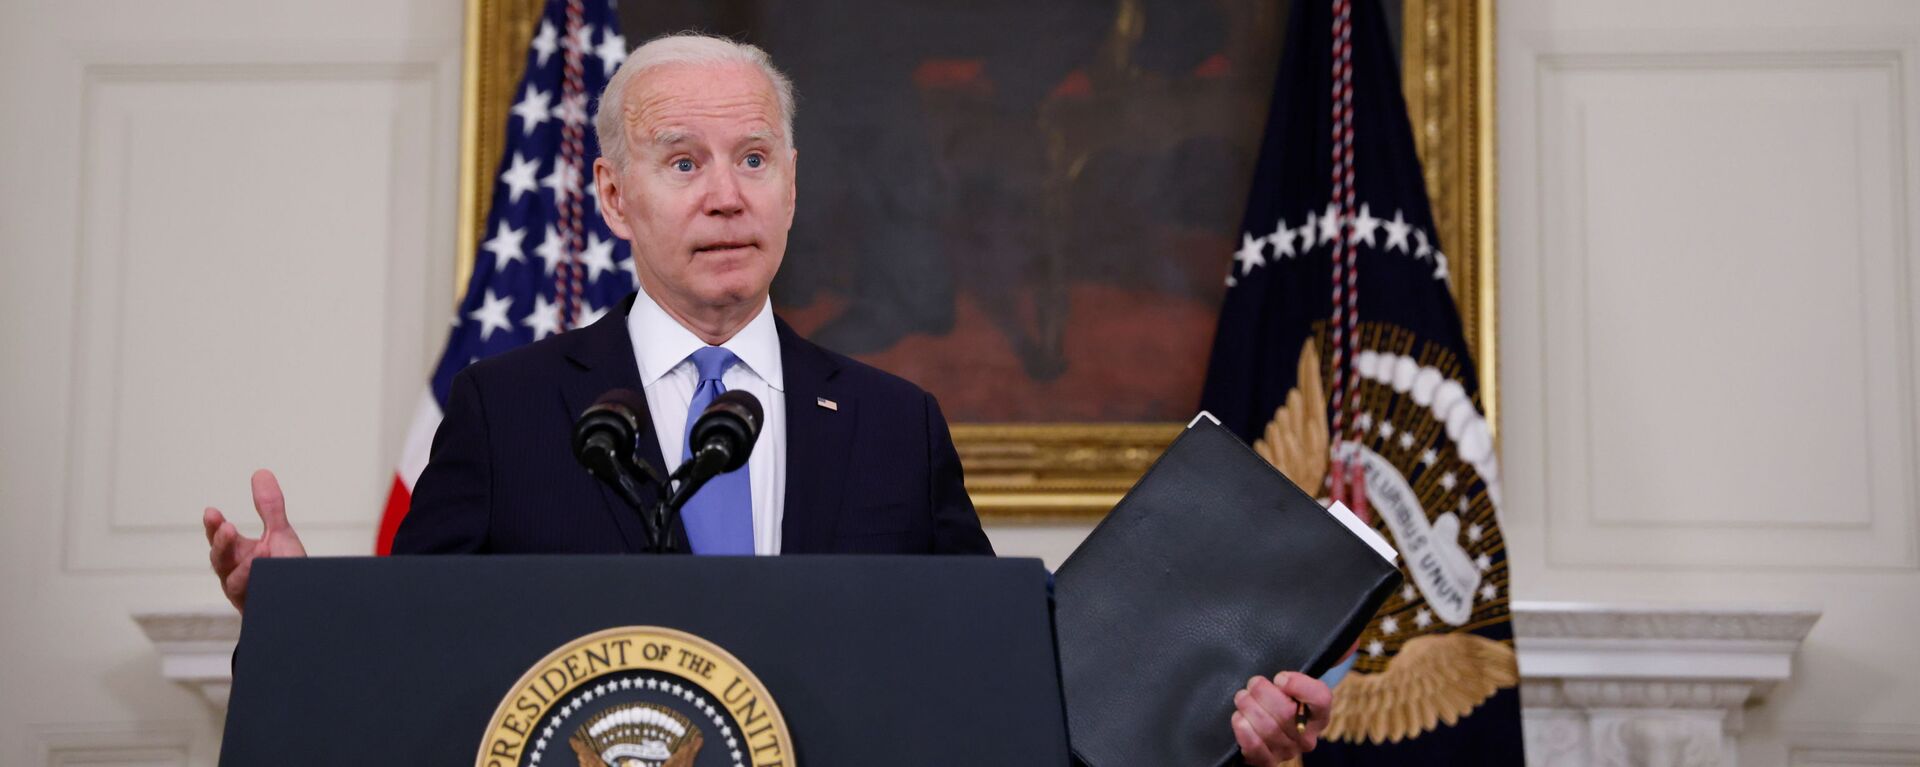 Tổng thống Hoa Kỳ Joe Biden phát biểu về tình trạng Kế hoạch Giải cứu người Mỹ của ông từ Phòng ăn Nhà nước tại Nhà Trắng ở Washington, D.C., Hoa Kỳ, ngày 5 tháng 5 năm 2021 - Sputnik Việt Nam, 1920, 19.05.2021